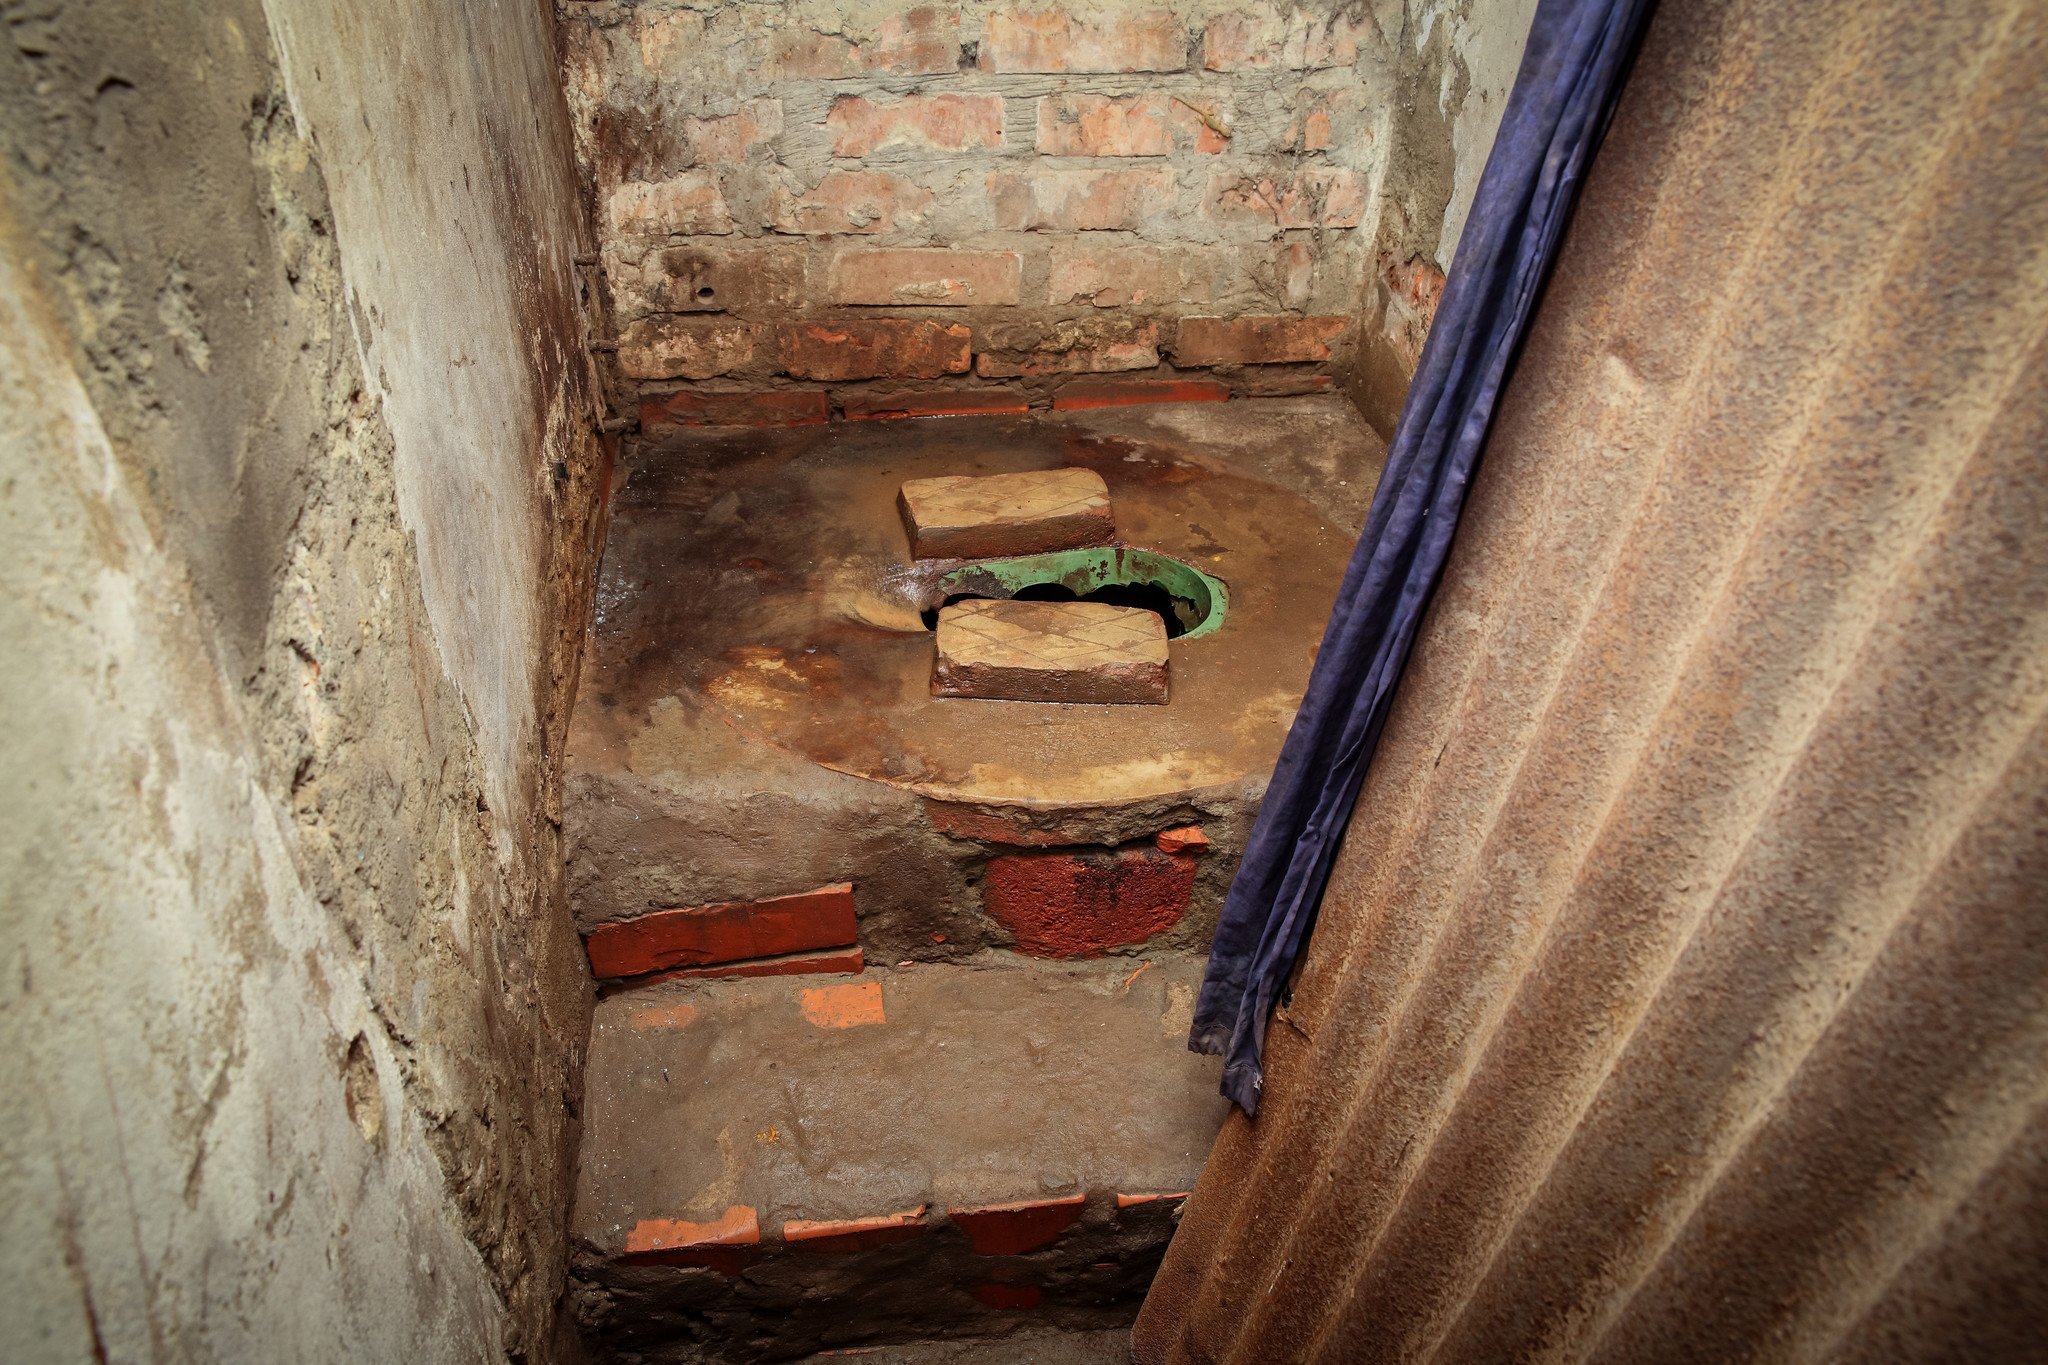 工业区内的棚屋大部分都没有独立洗手间，Rasheda需要与约15名邻居共用一个公共洗手间。（摄影：GMB Akash）